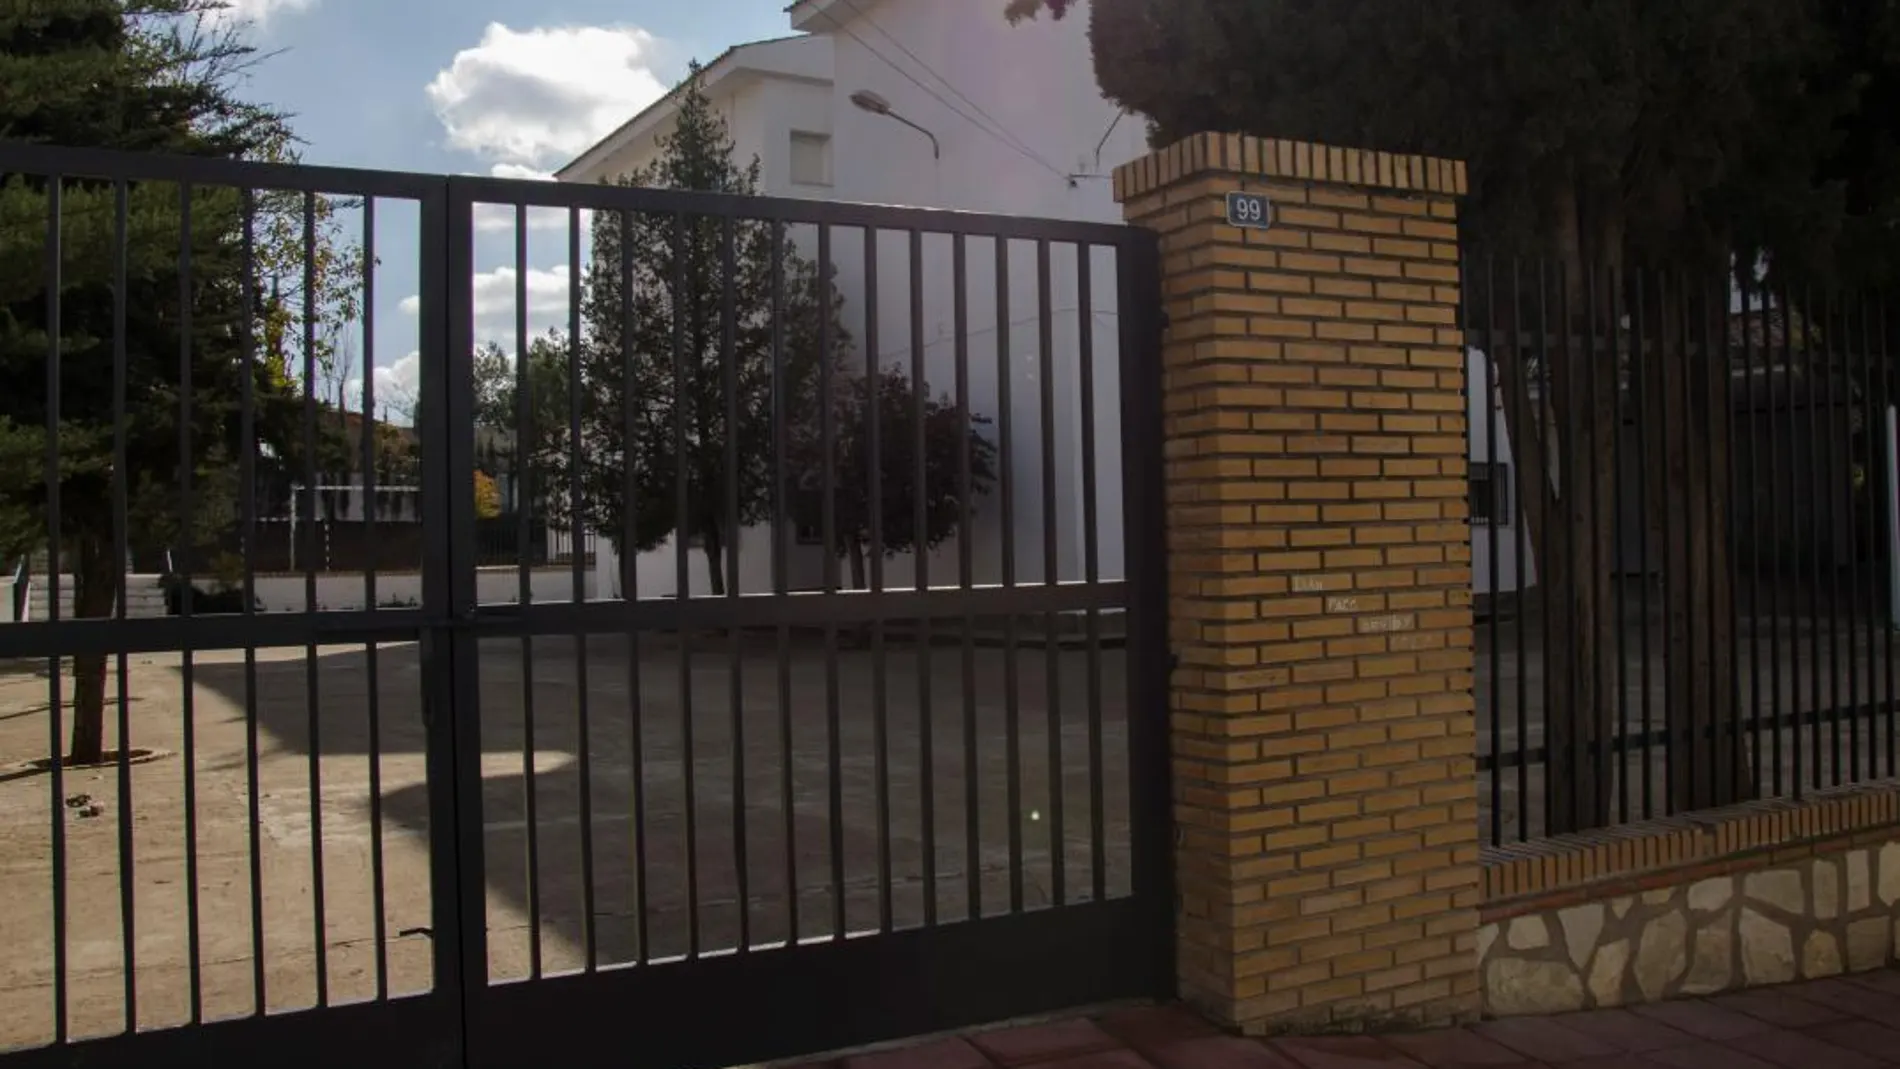 Puerta del colegio donde estudiaban los presuntos agresores y la víctima/Efe